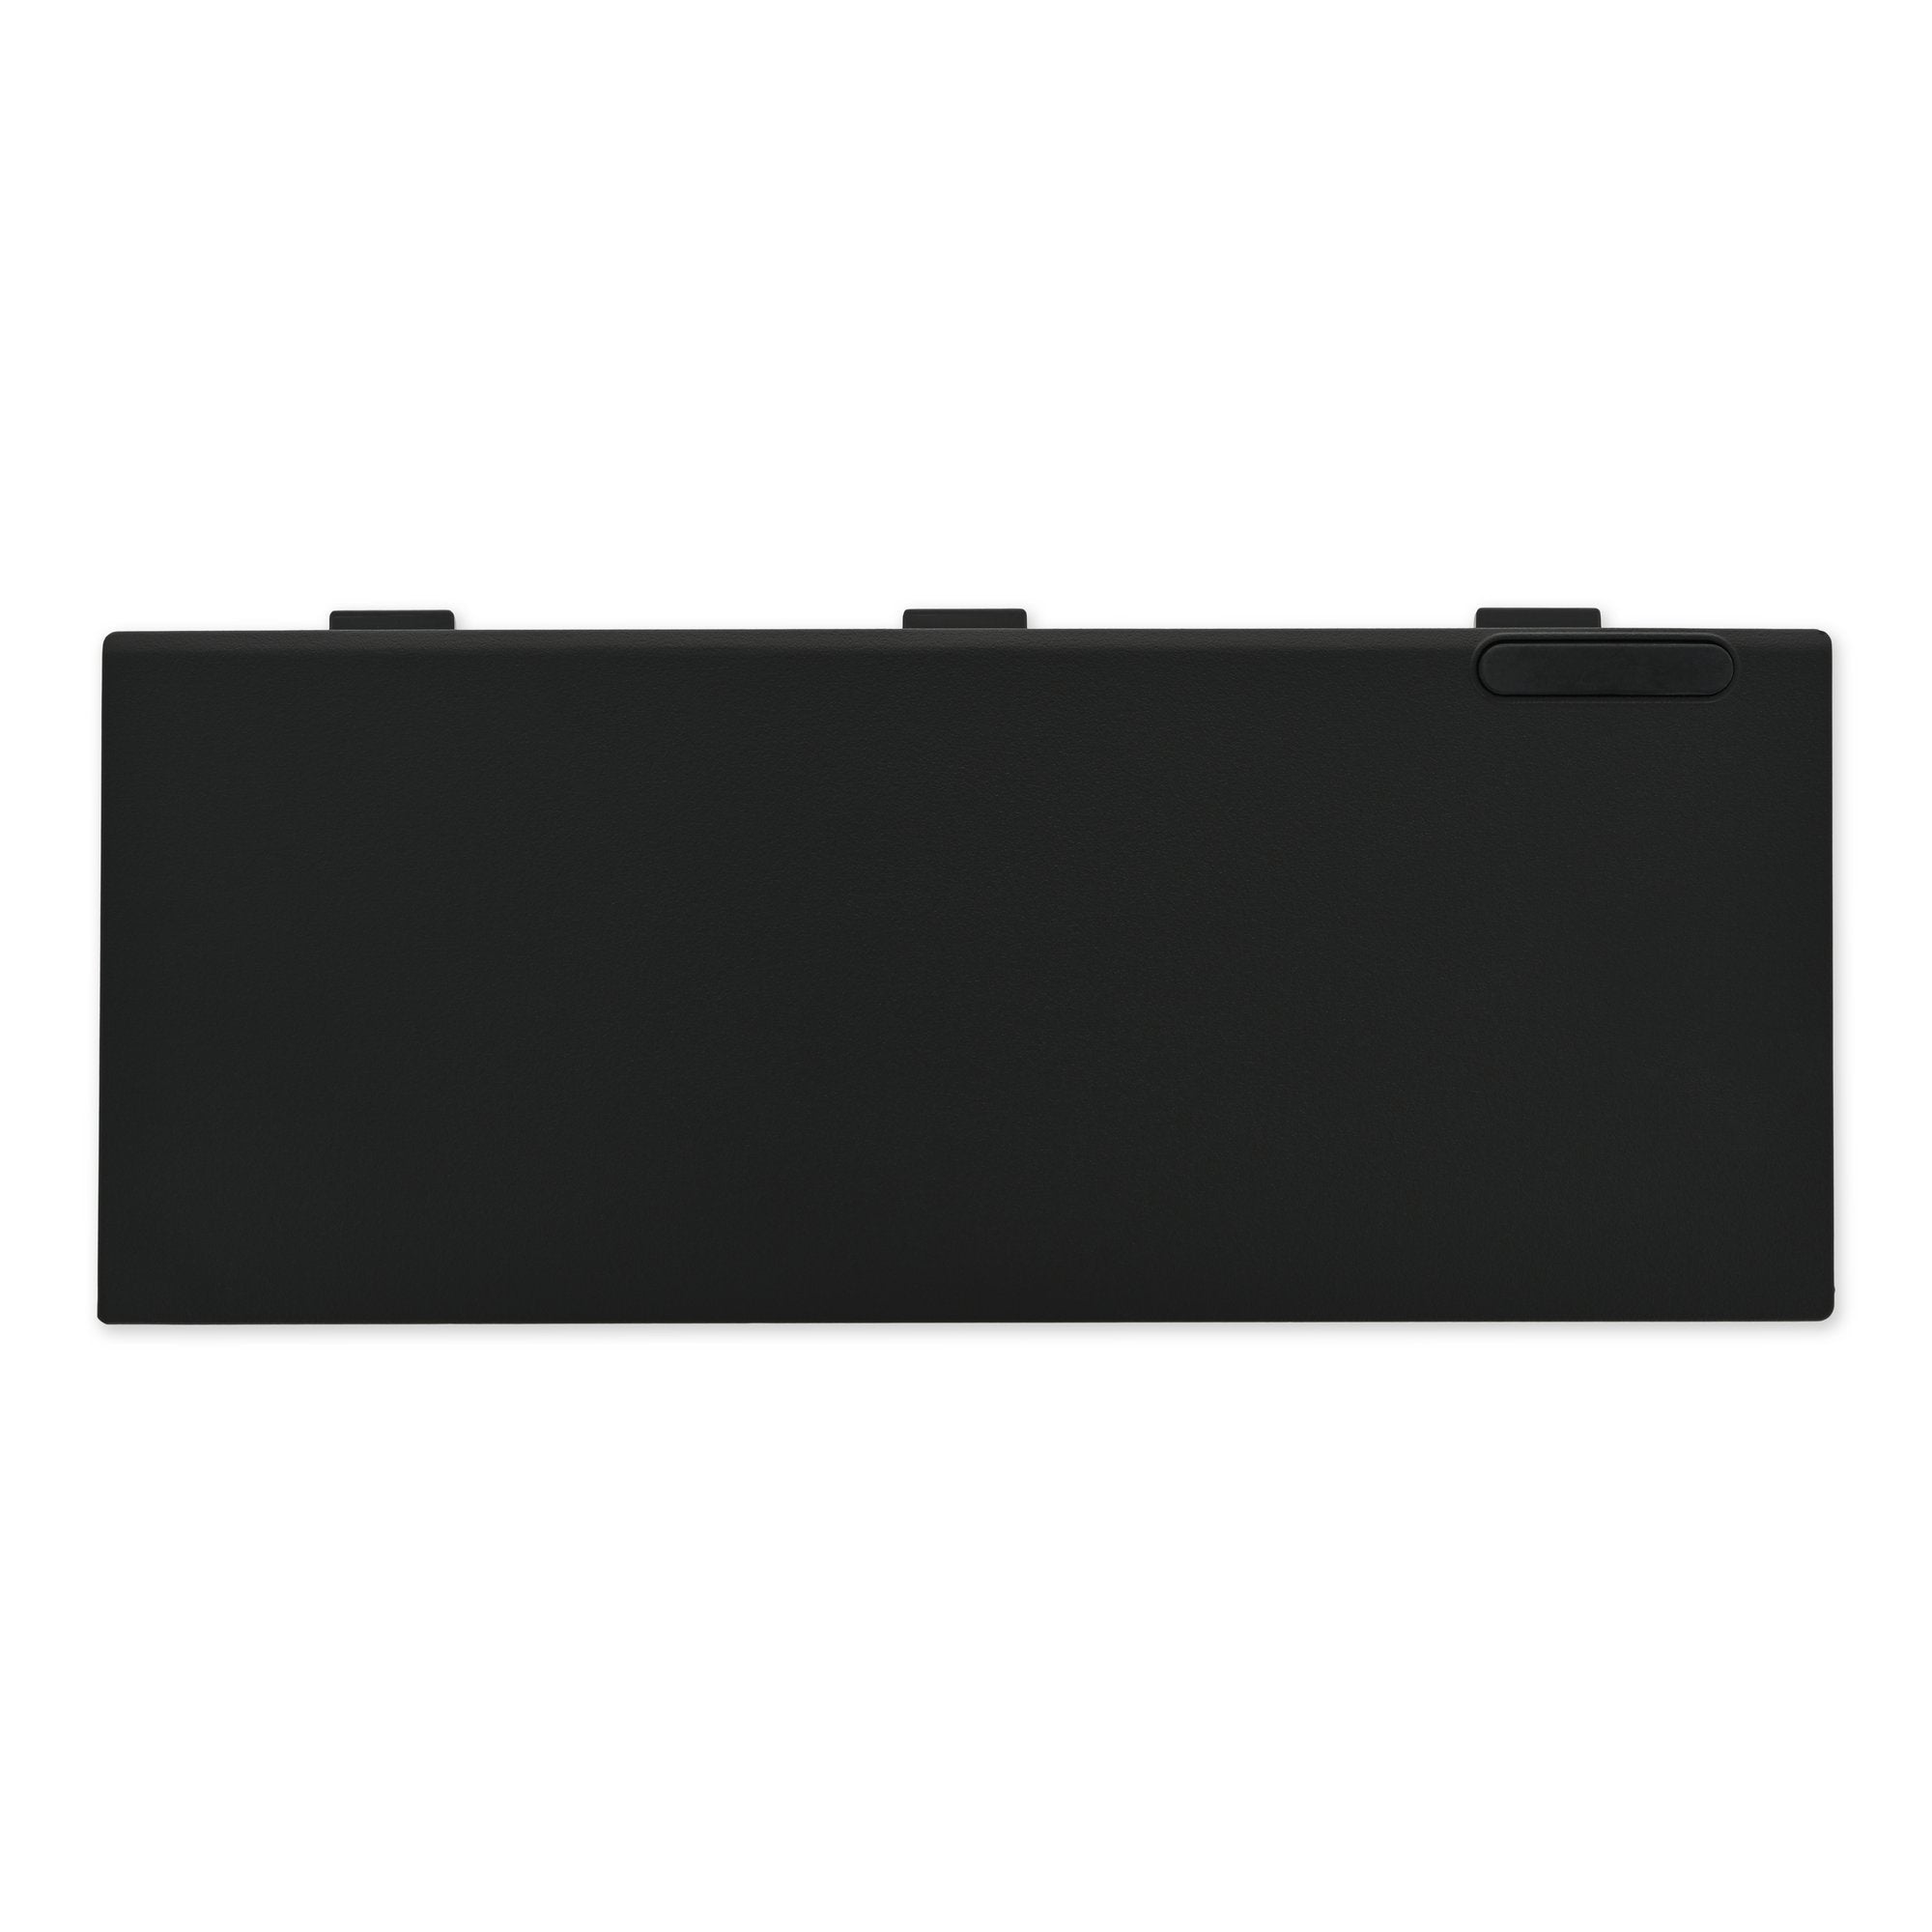 Lenovo ThinkPad P50/P51 Battery New 11.25V High Capacity